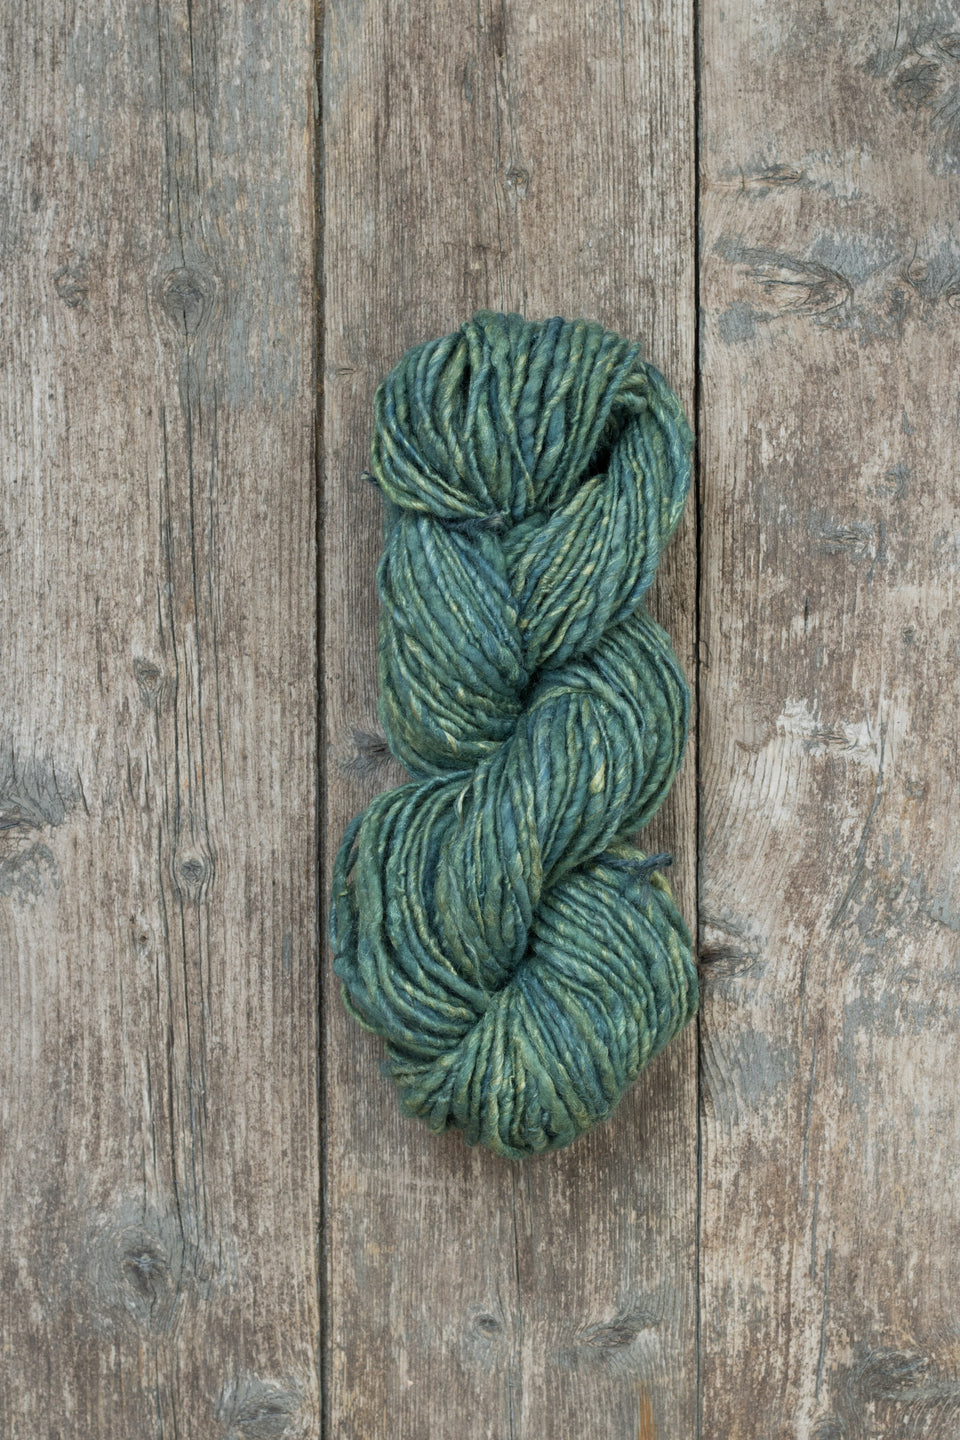 handspun, hand-dyed indigo art yarn. shetland wool, linen, tussah silk shown wound in a skein